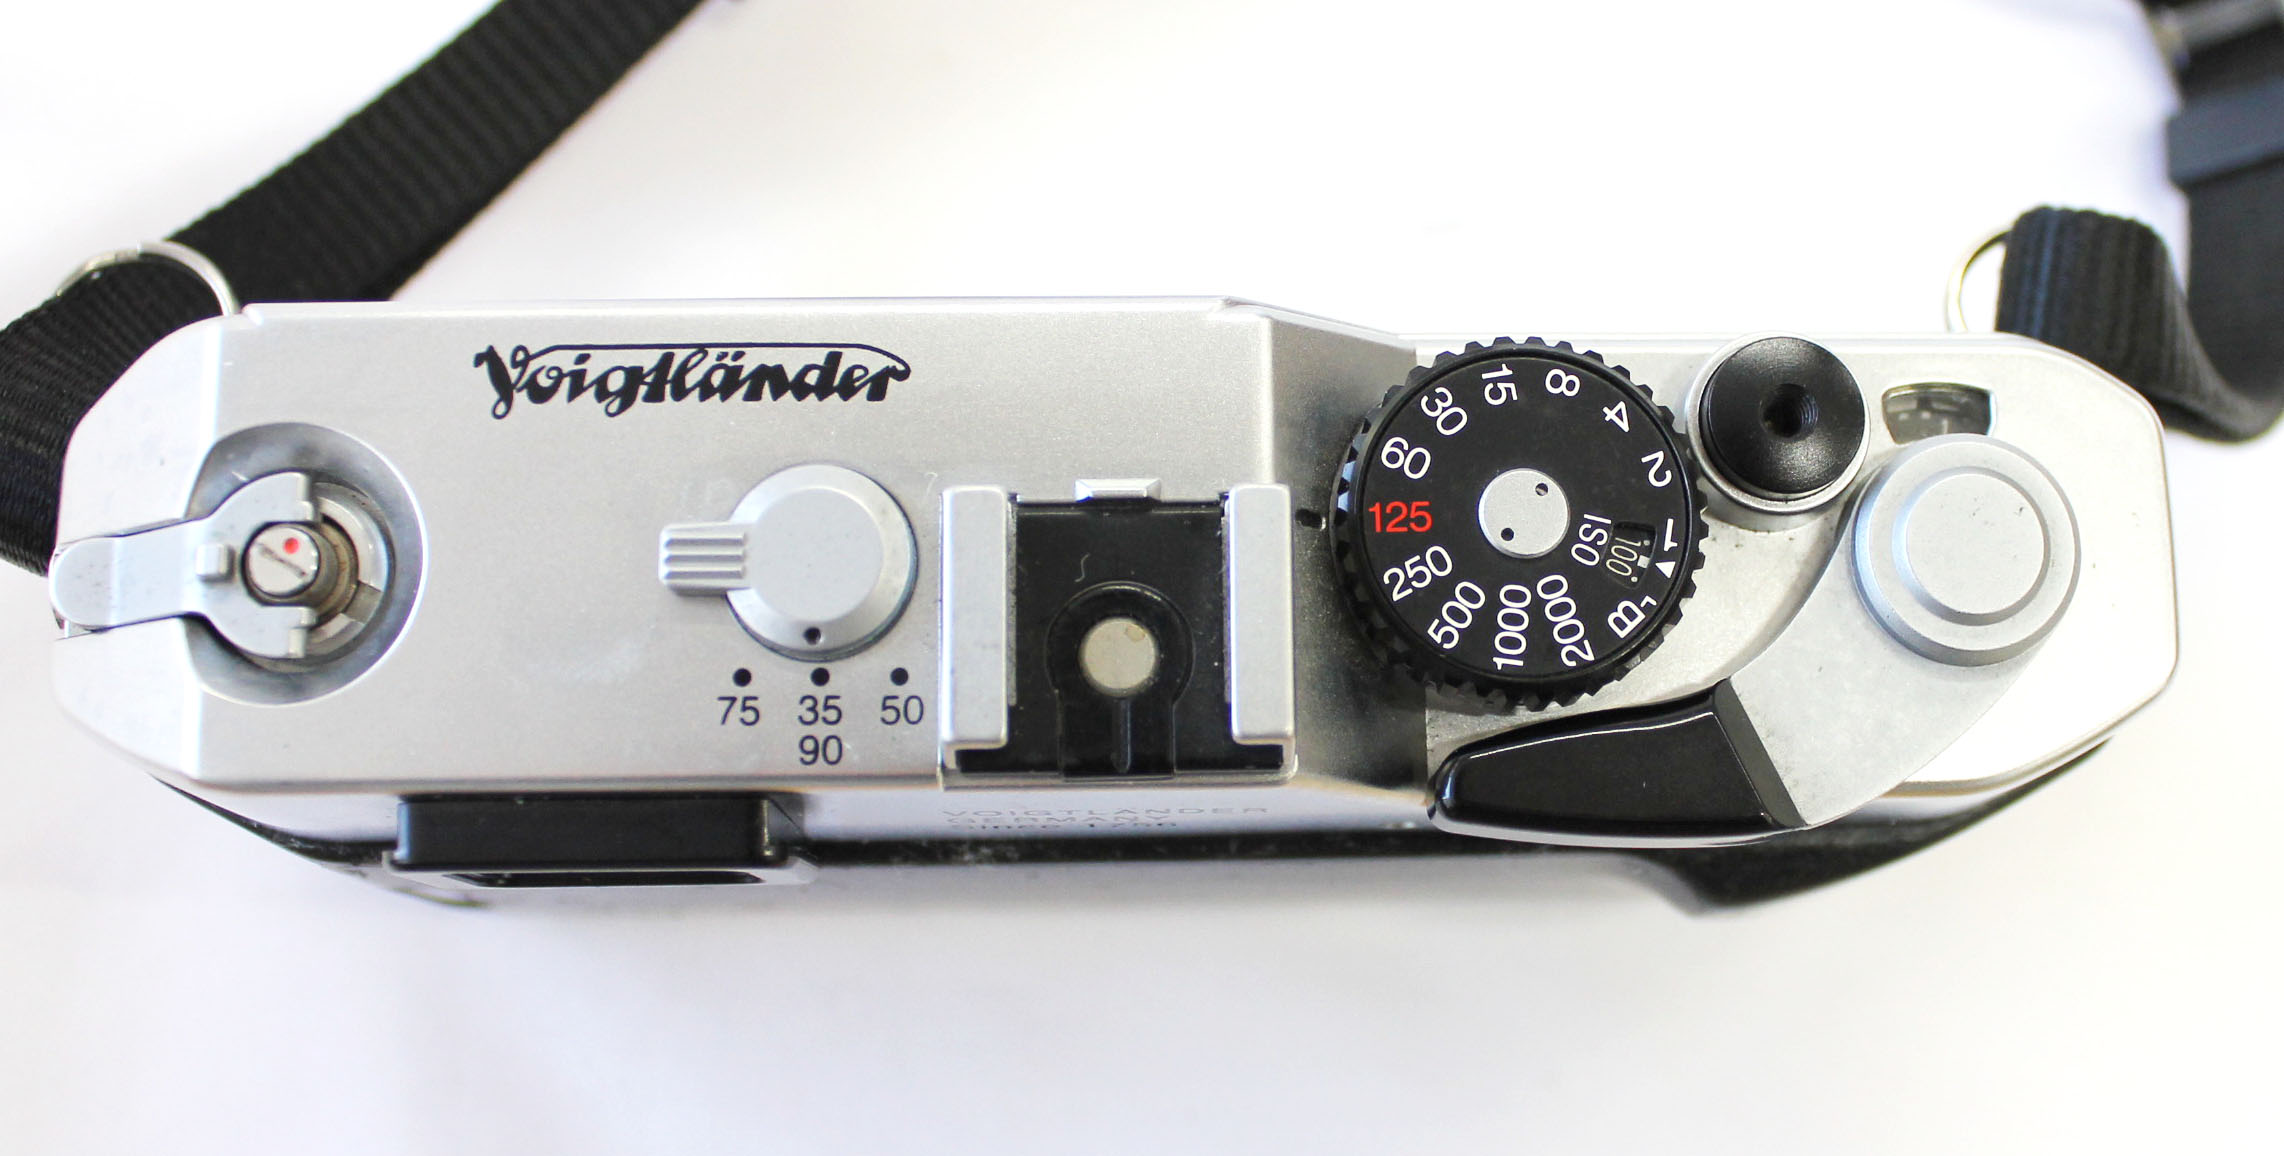  Voigtlander Bessa R Rangefinder 35mm Film Camera L39 LTM from Japan Photo 8